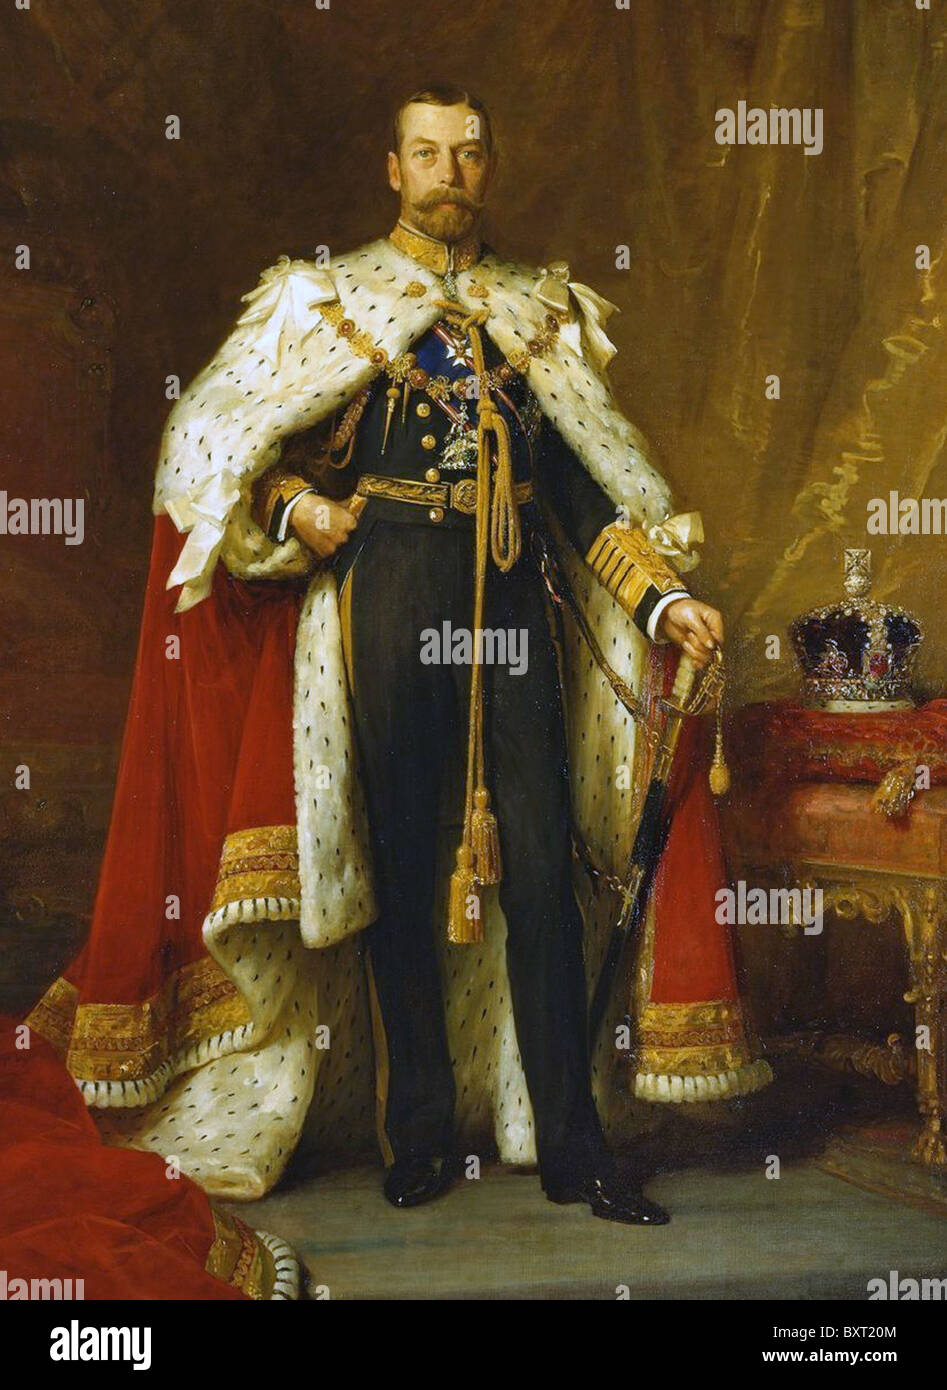 Le roi George V (1865-1936), monarque britannique dans ses robes de couronnement peint par sir Luke Fildes en 1911 Banque D'Images